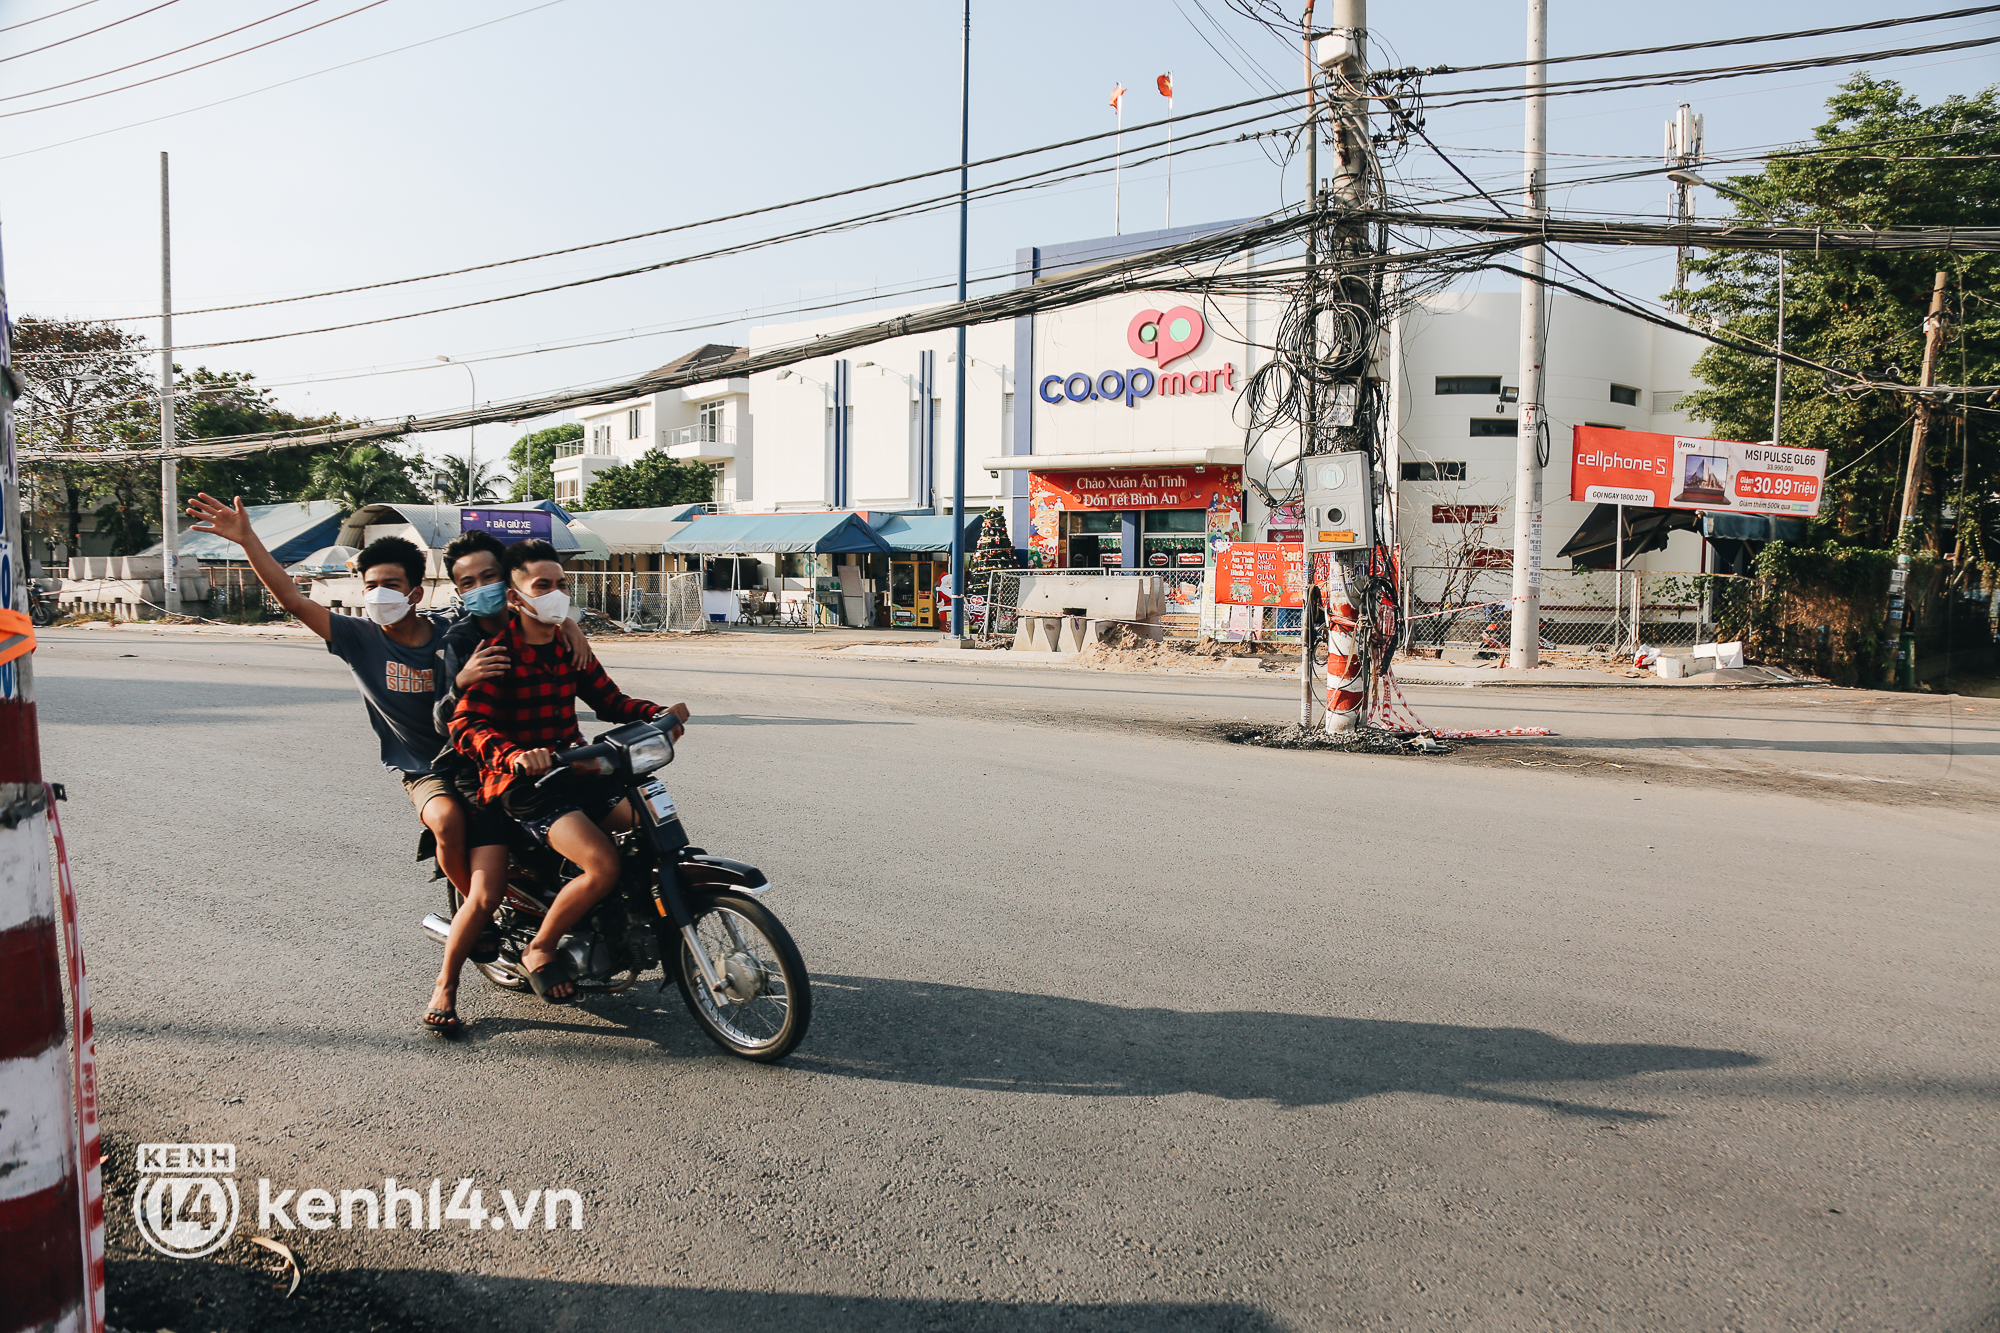 Hàng trăm cột điện bị bỏ quên giữa đường ở Sài Gòn, người dân nín thở luồn lách - Ảnh 12.